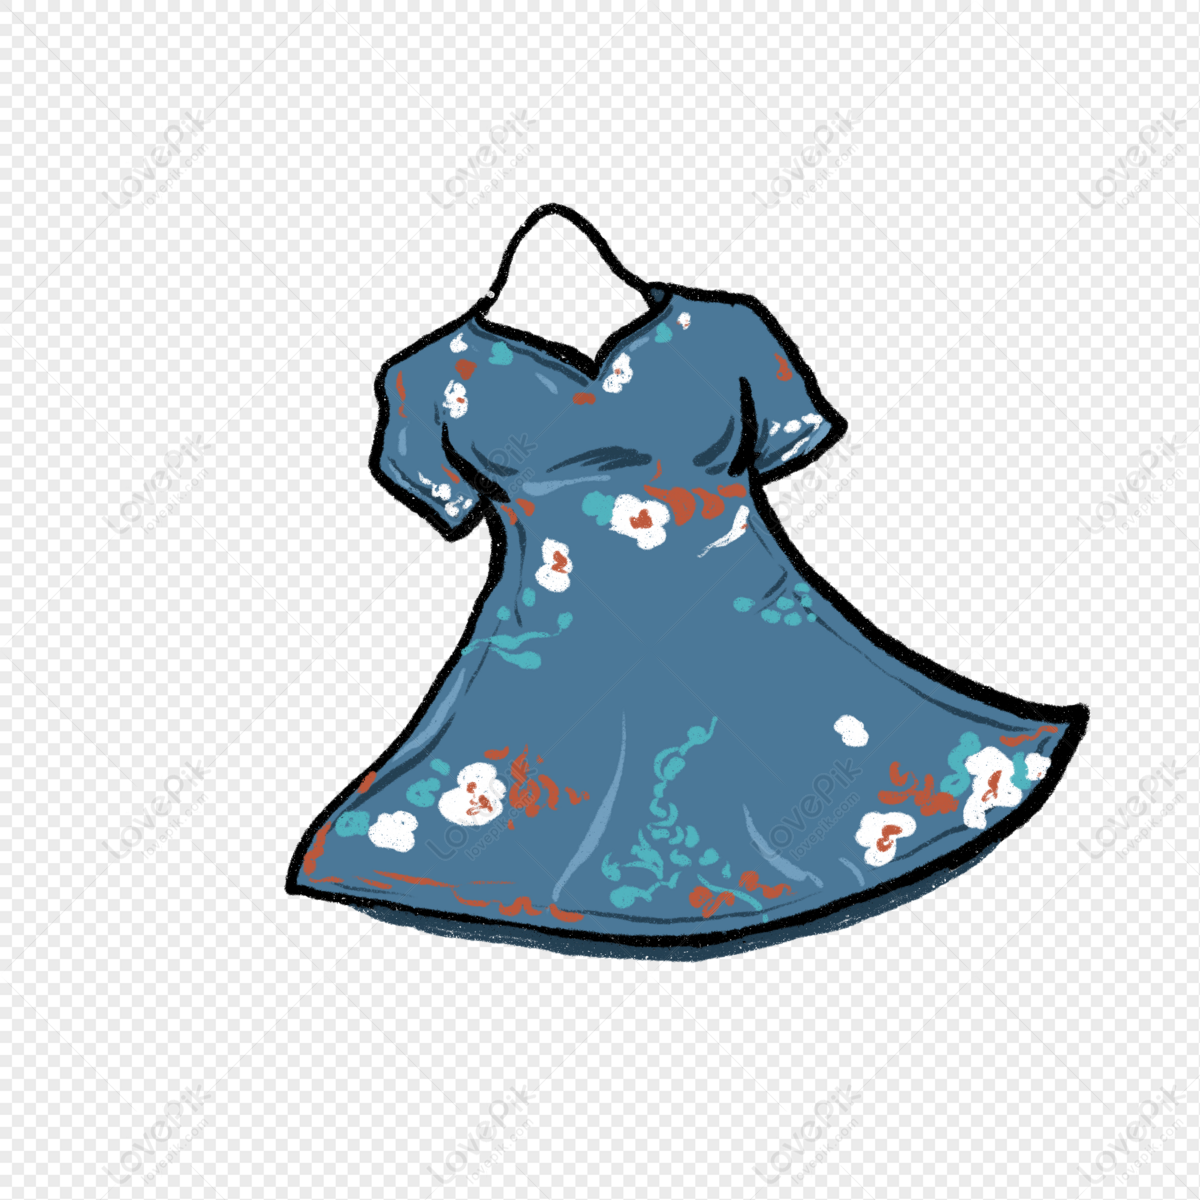 Download Floral Dress Png Picture - Dress Transparent Background, Png  Download - kindpng